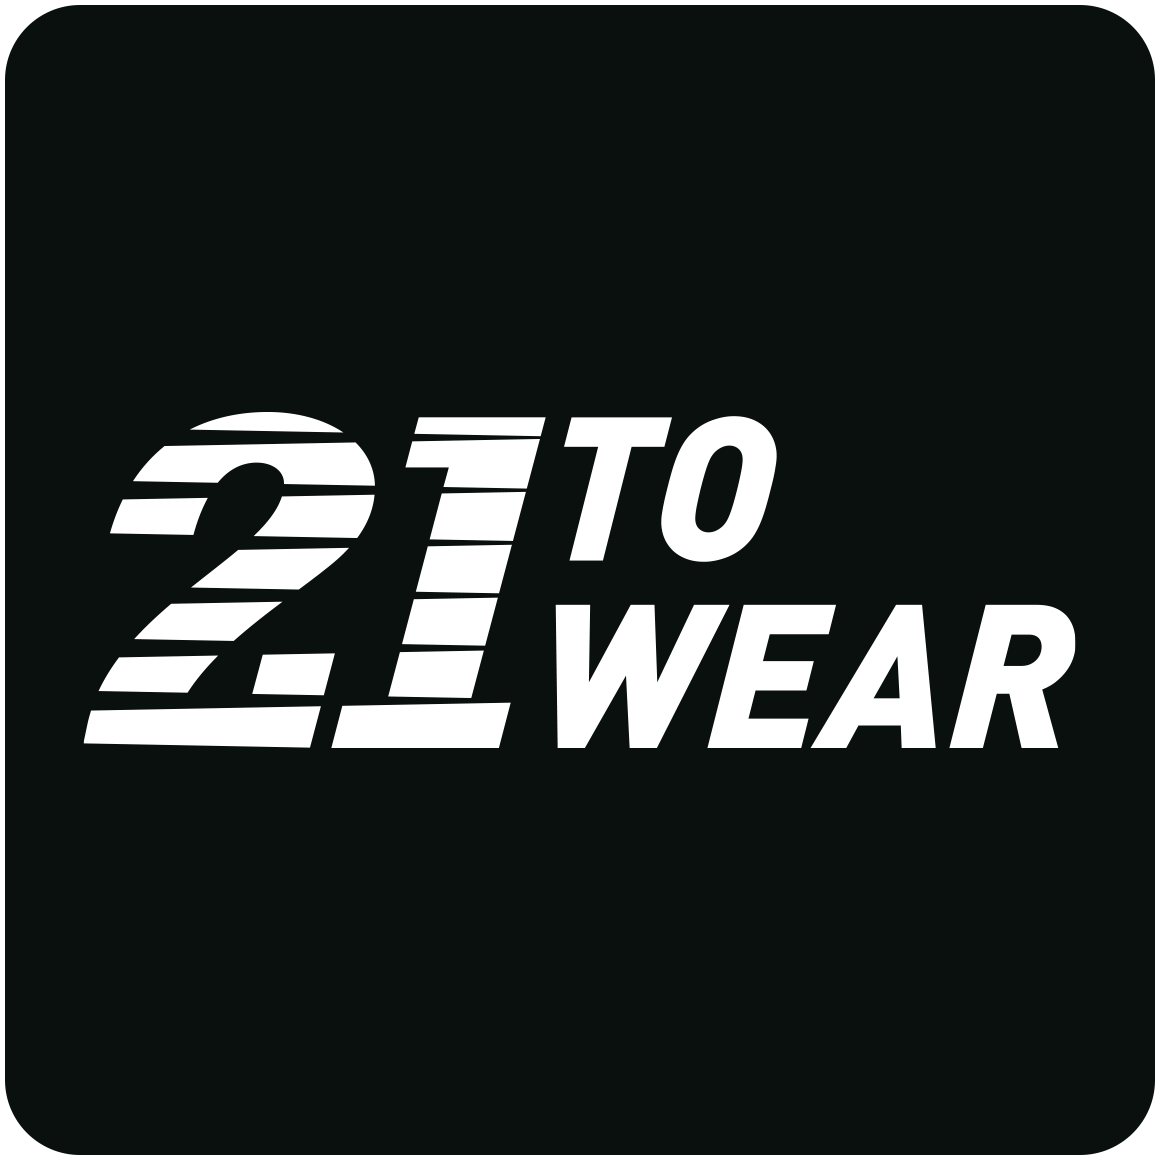 21 to Wear